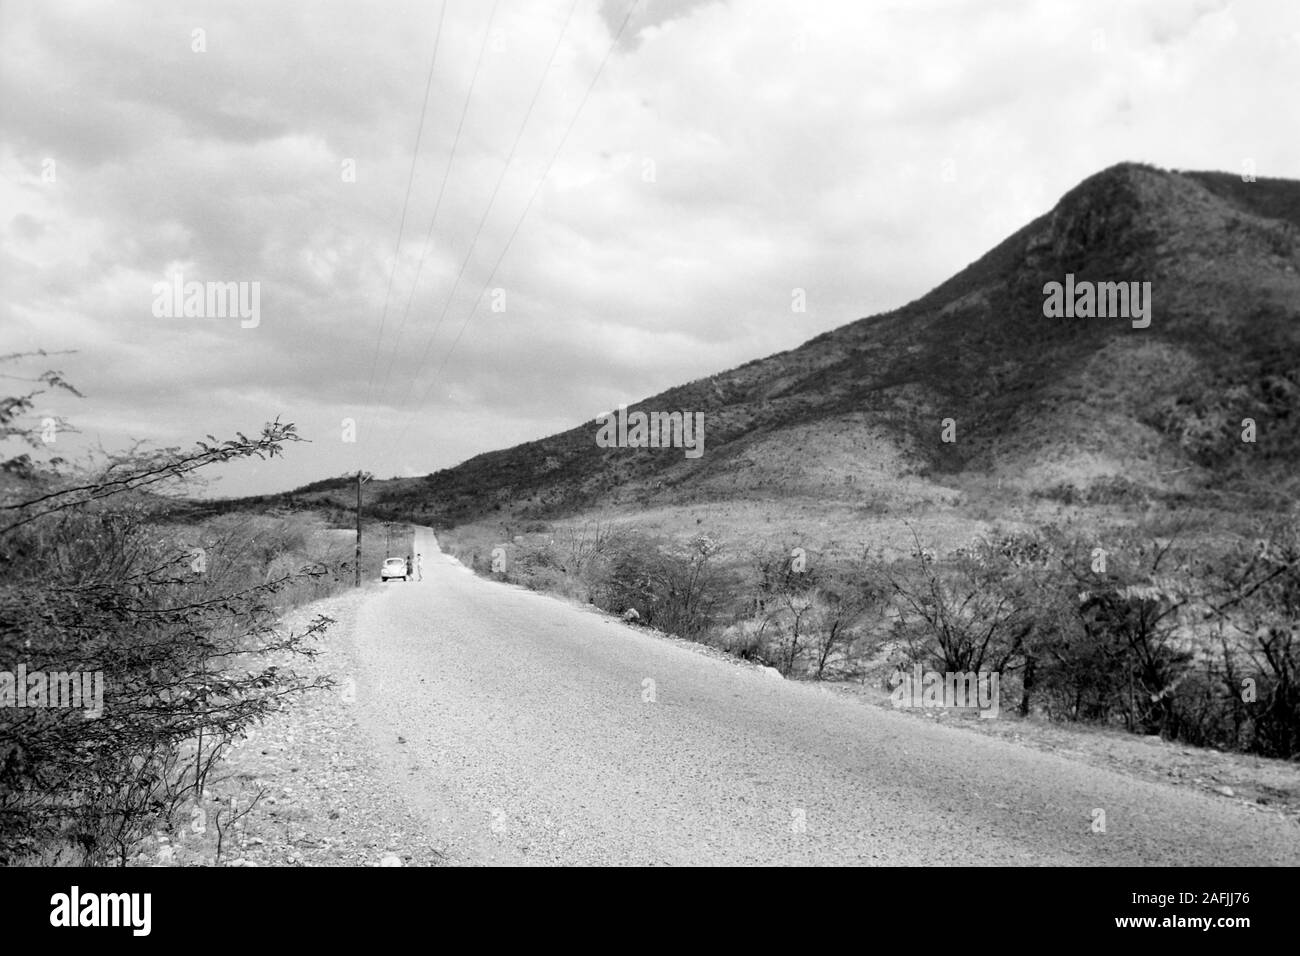 Wüstenartige Landschaft an der Straße zwischen Port-au-Prince und Cap-Haitien, 1967. Deserto-come il paesaggio dalla strada connection Port au Prince e Cap Haitien, 1967. Foto Stock